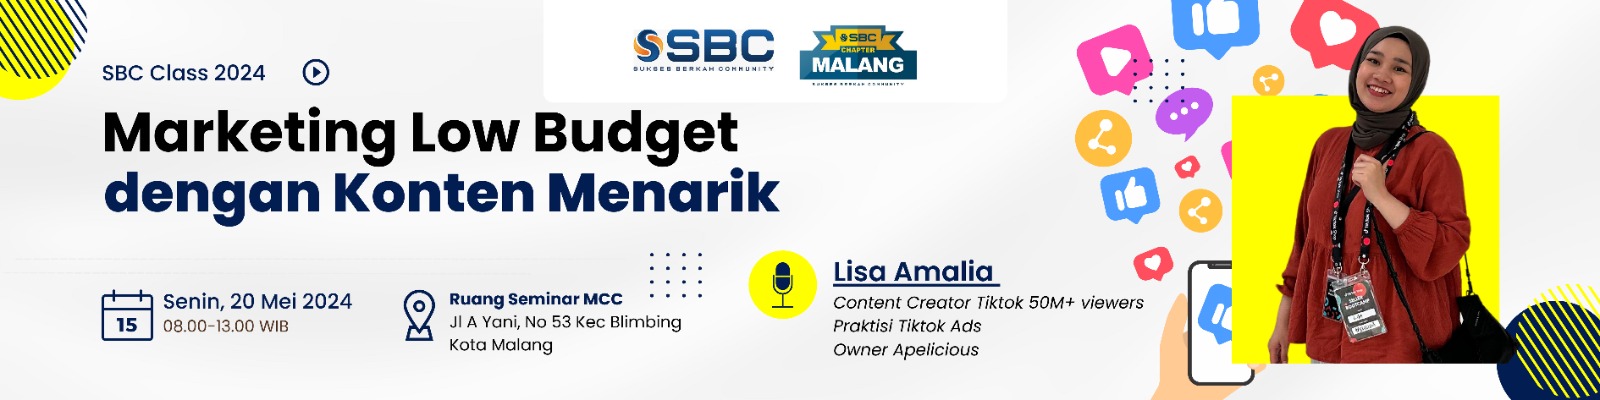 SBC Class “Marketing Low Budget dengan Konten Menarik”